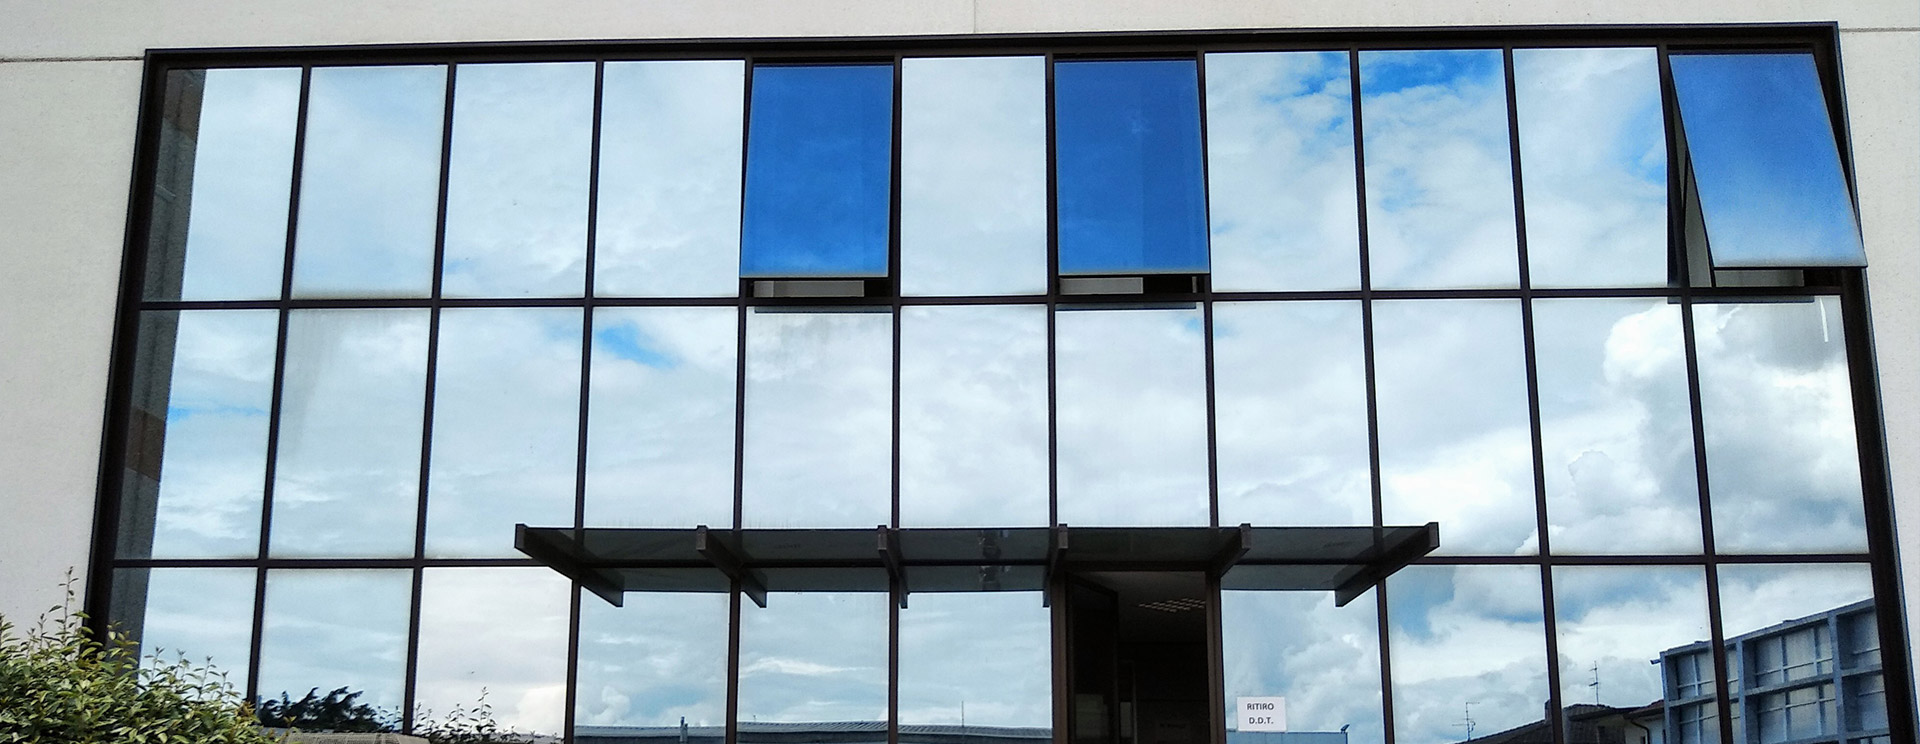 Pellicole di sicurezza per vetri a Brescia e Cremona - Serifot